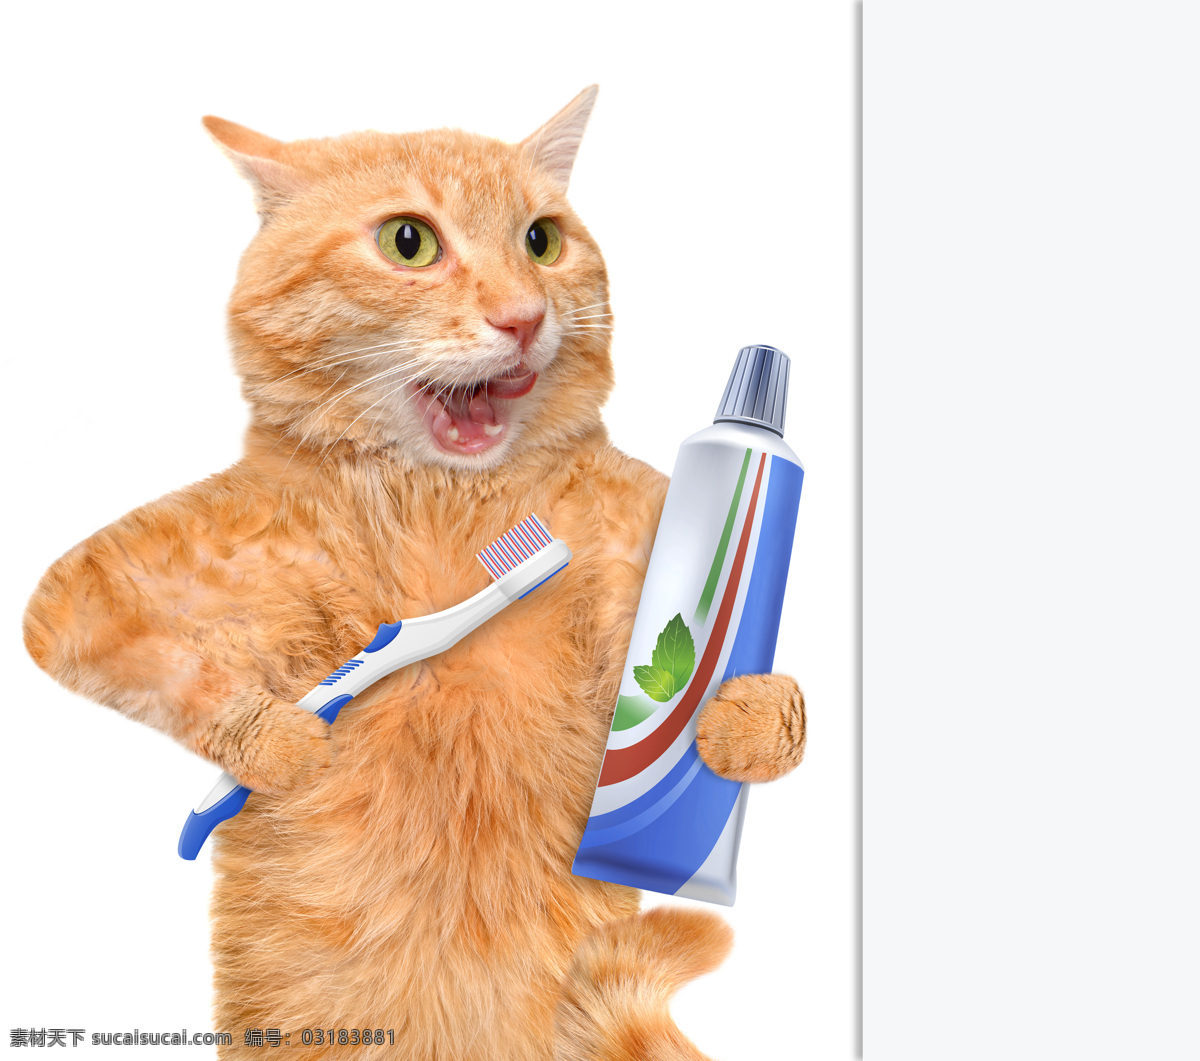 刷牙的小猫 牙刷 牙膏 可爱的猫 猫咪 小猫 宠物 动物世界 动物摄影 陆地动物 生物世界 白色